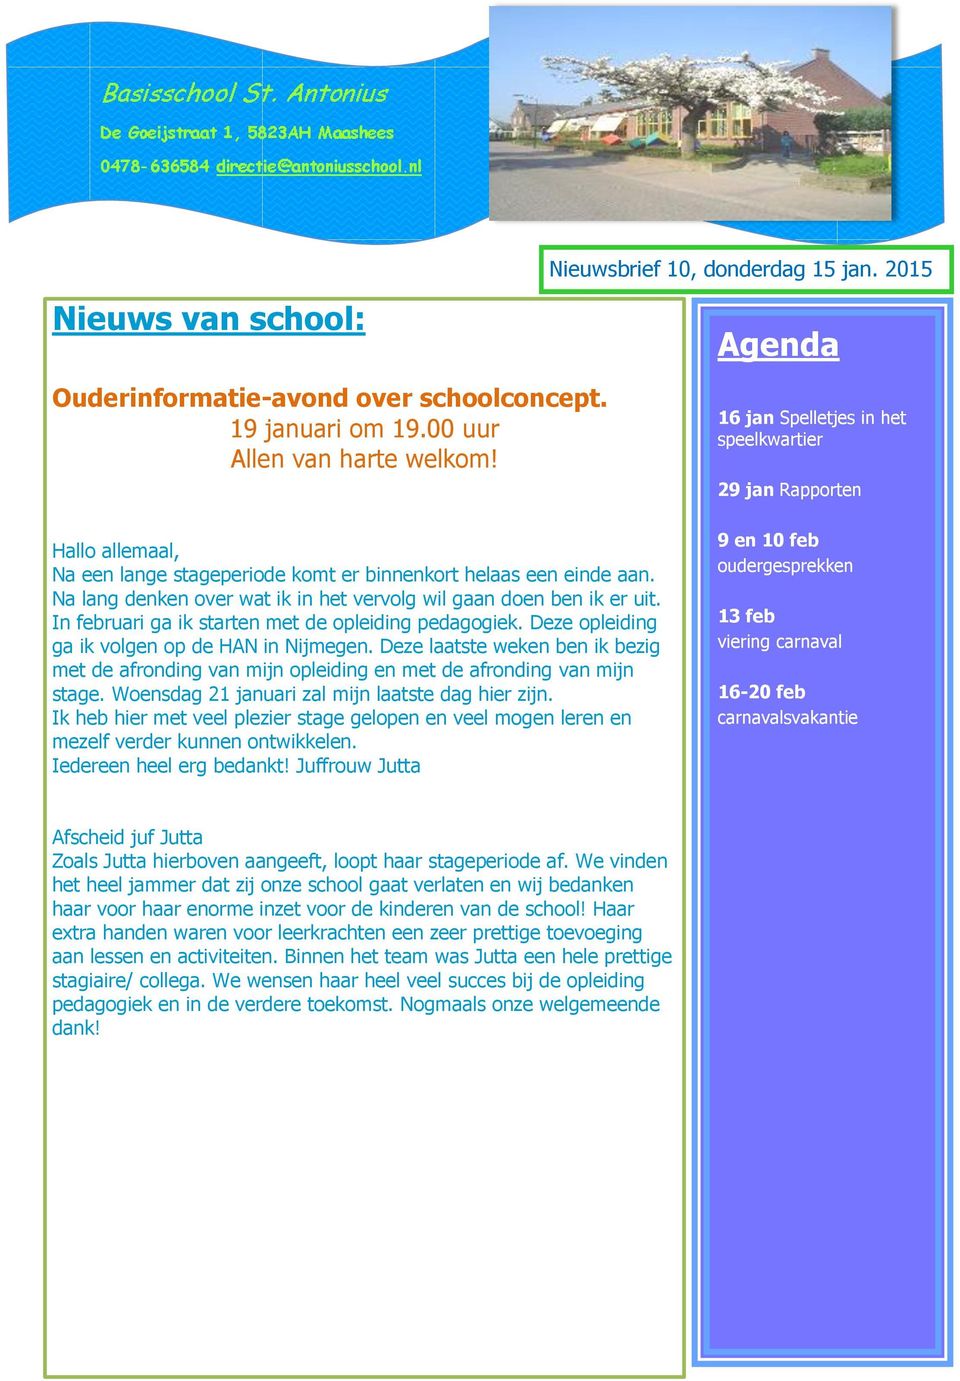 In februari ga ik starten met de opleiding pedagogiek. Deze opleiding ga ik volgen op de HAN in Nijmegen.